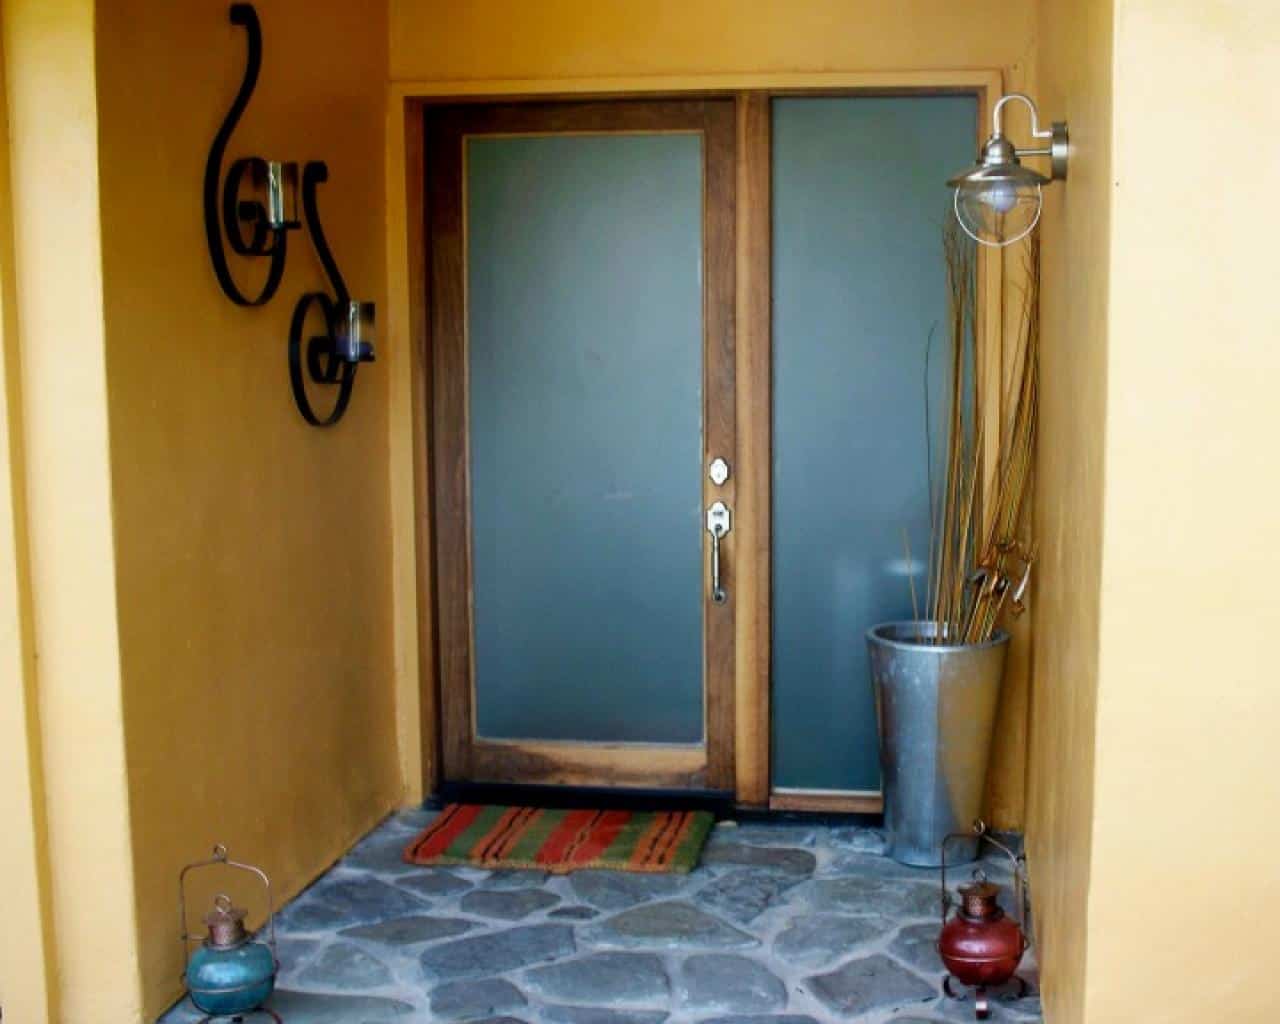 energy efficient doors